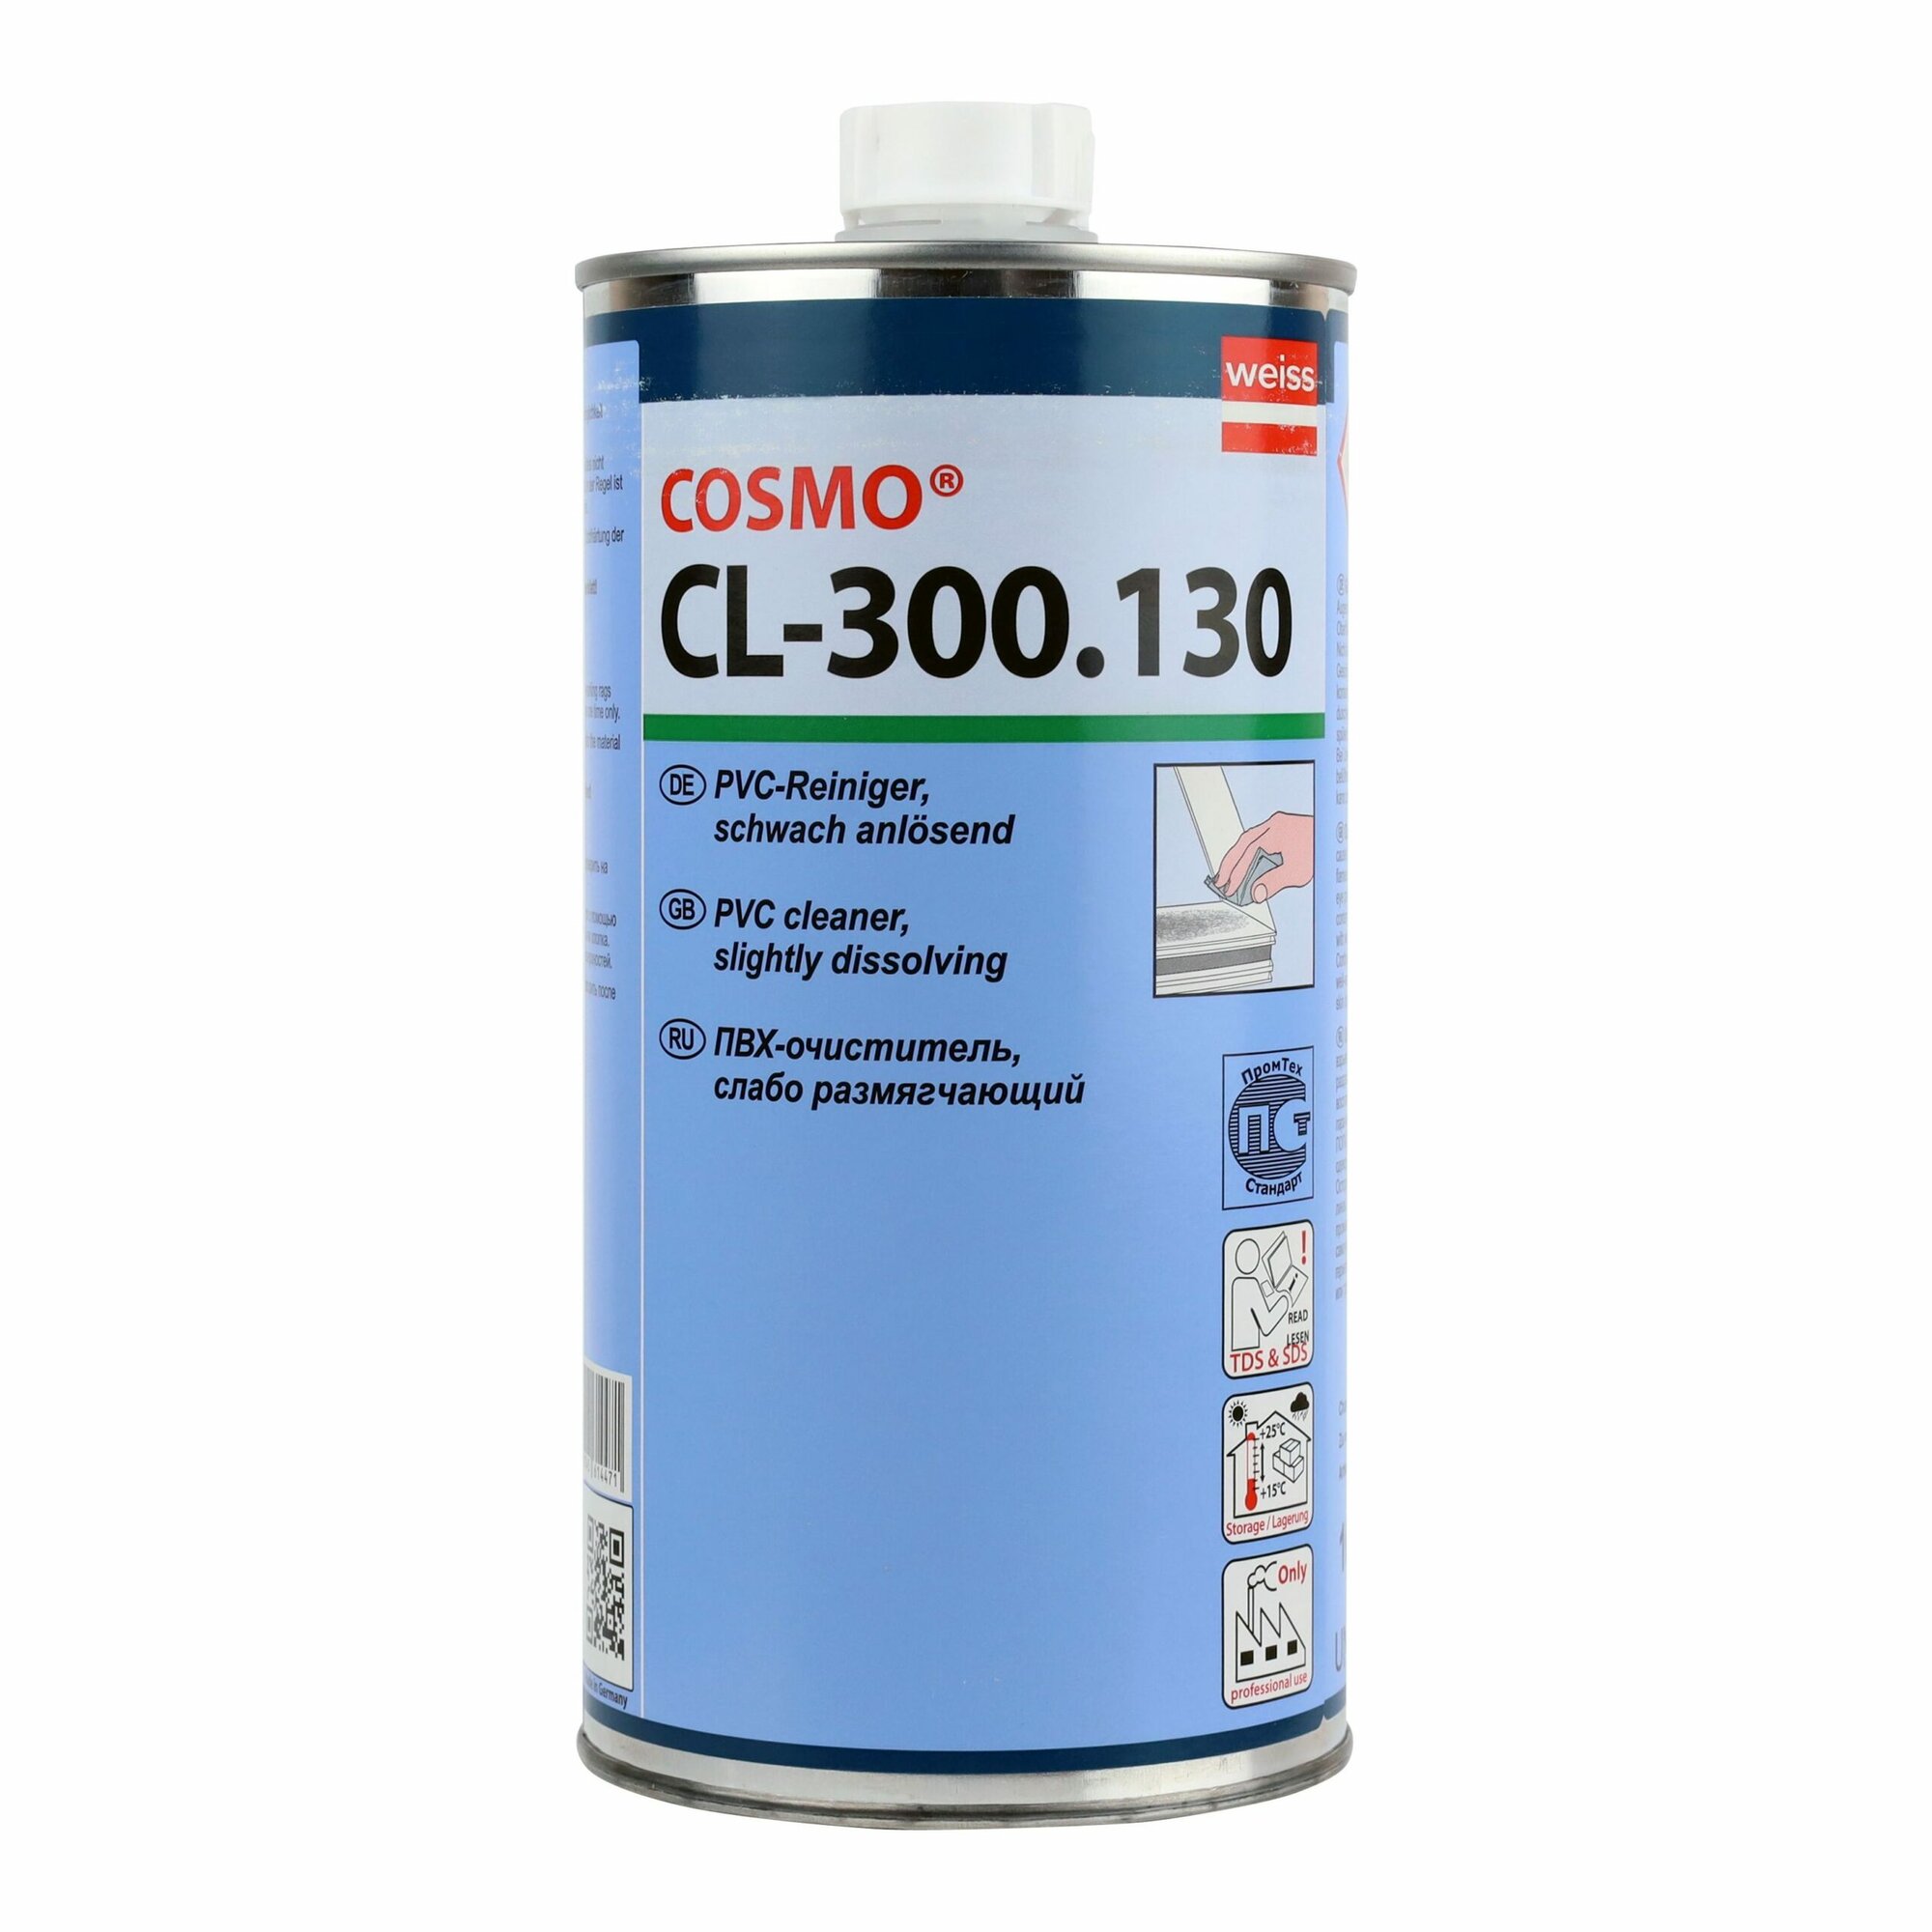 Cosmo CL-300.130 / Cosmofen 10 очиститель ПВХ (1 л)